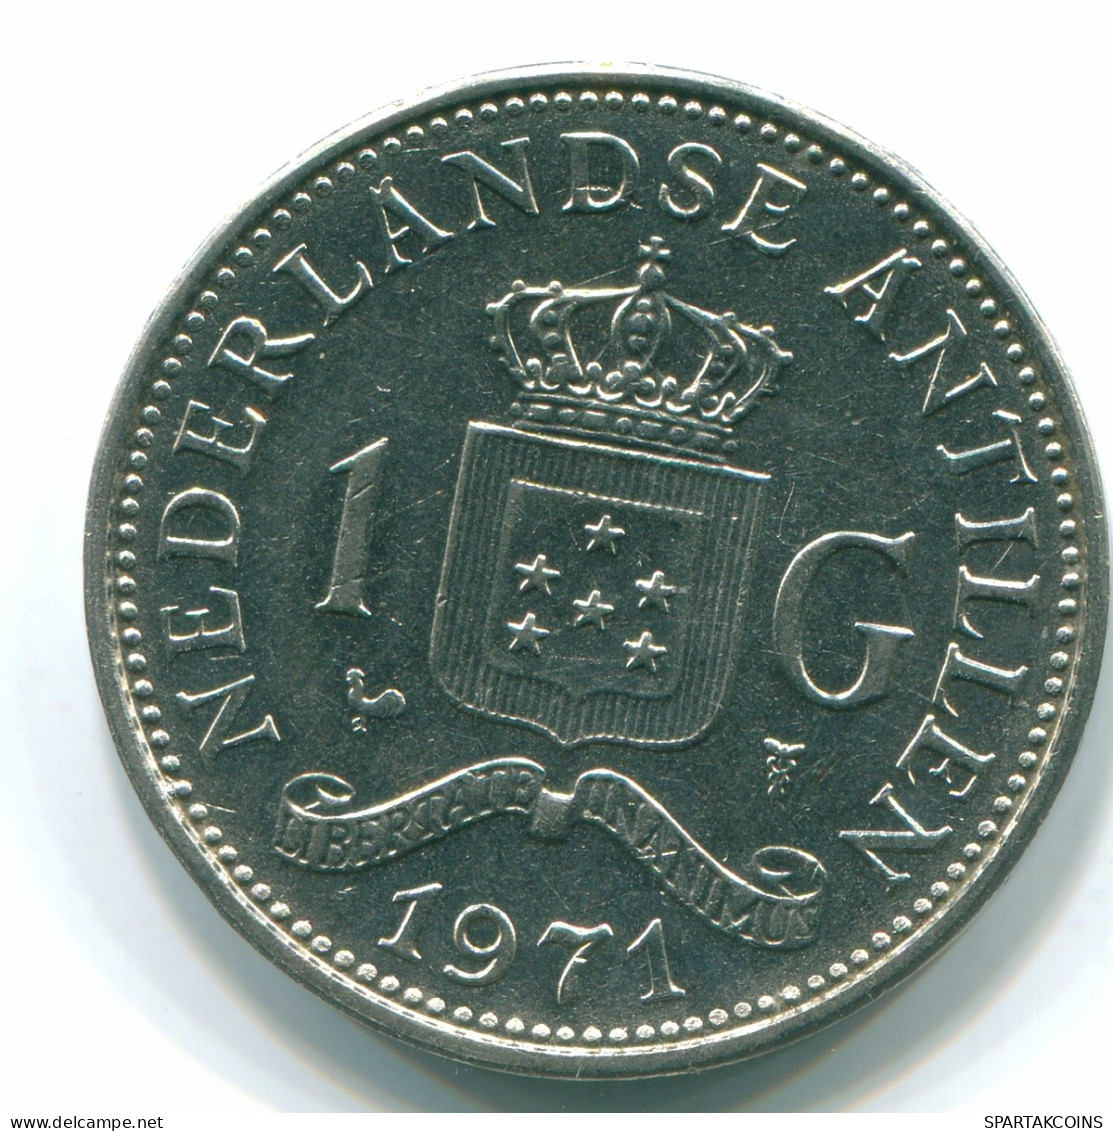 1 GULDEN 1971 NETHERLANDS ANTILLES Nickel Colonial Coin #S11938.U.A - Antillas Neerlandesas